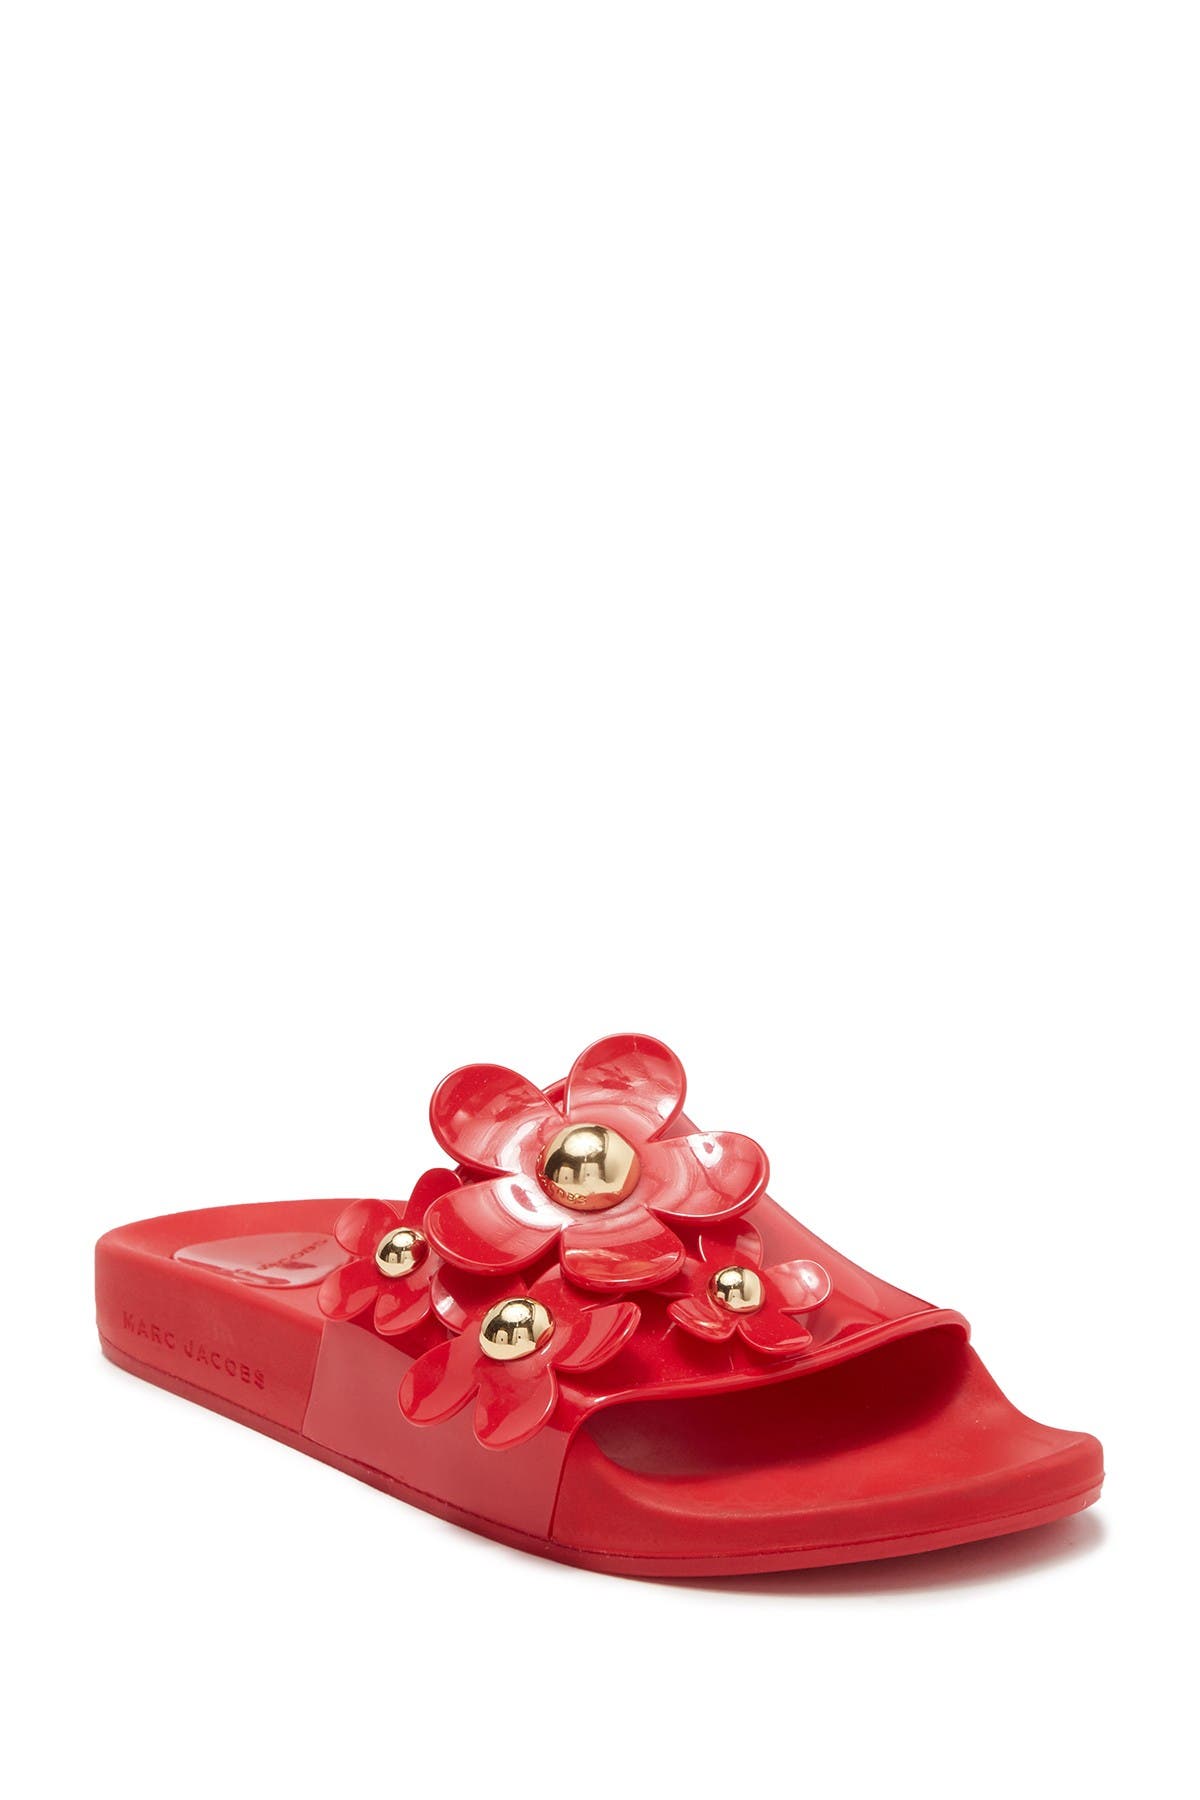 Marc Jacobs Daisy Aqua Slide Sandal In Red | ModeSens